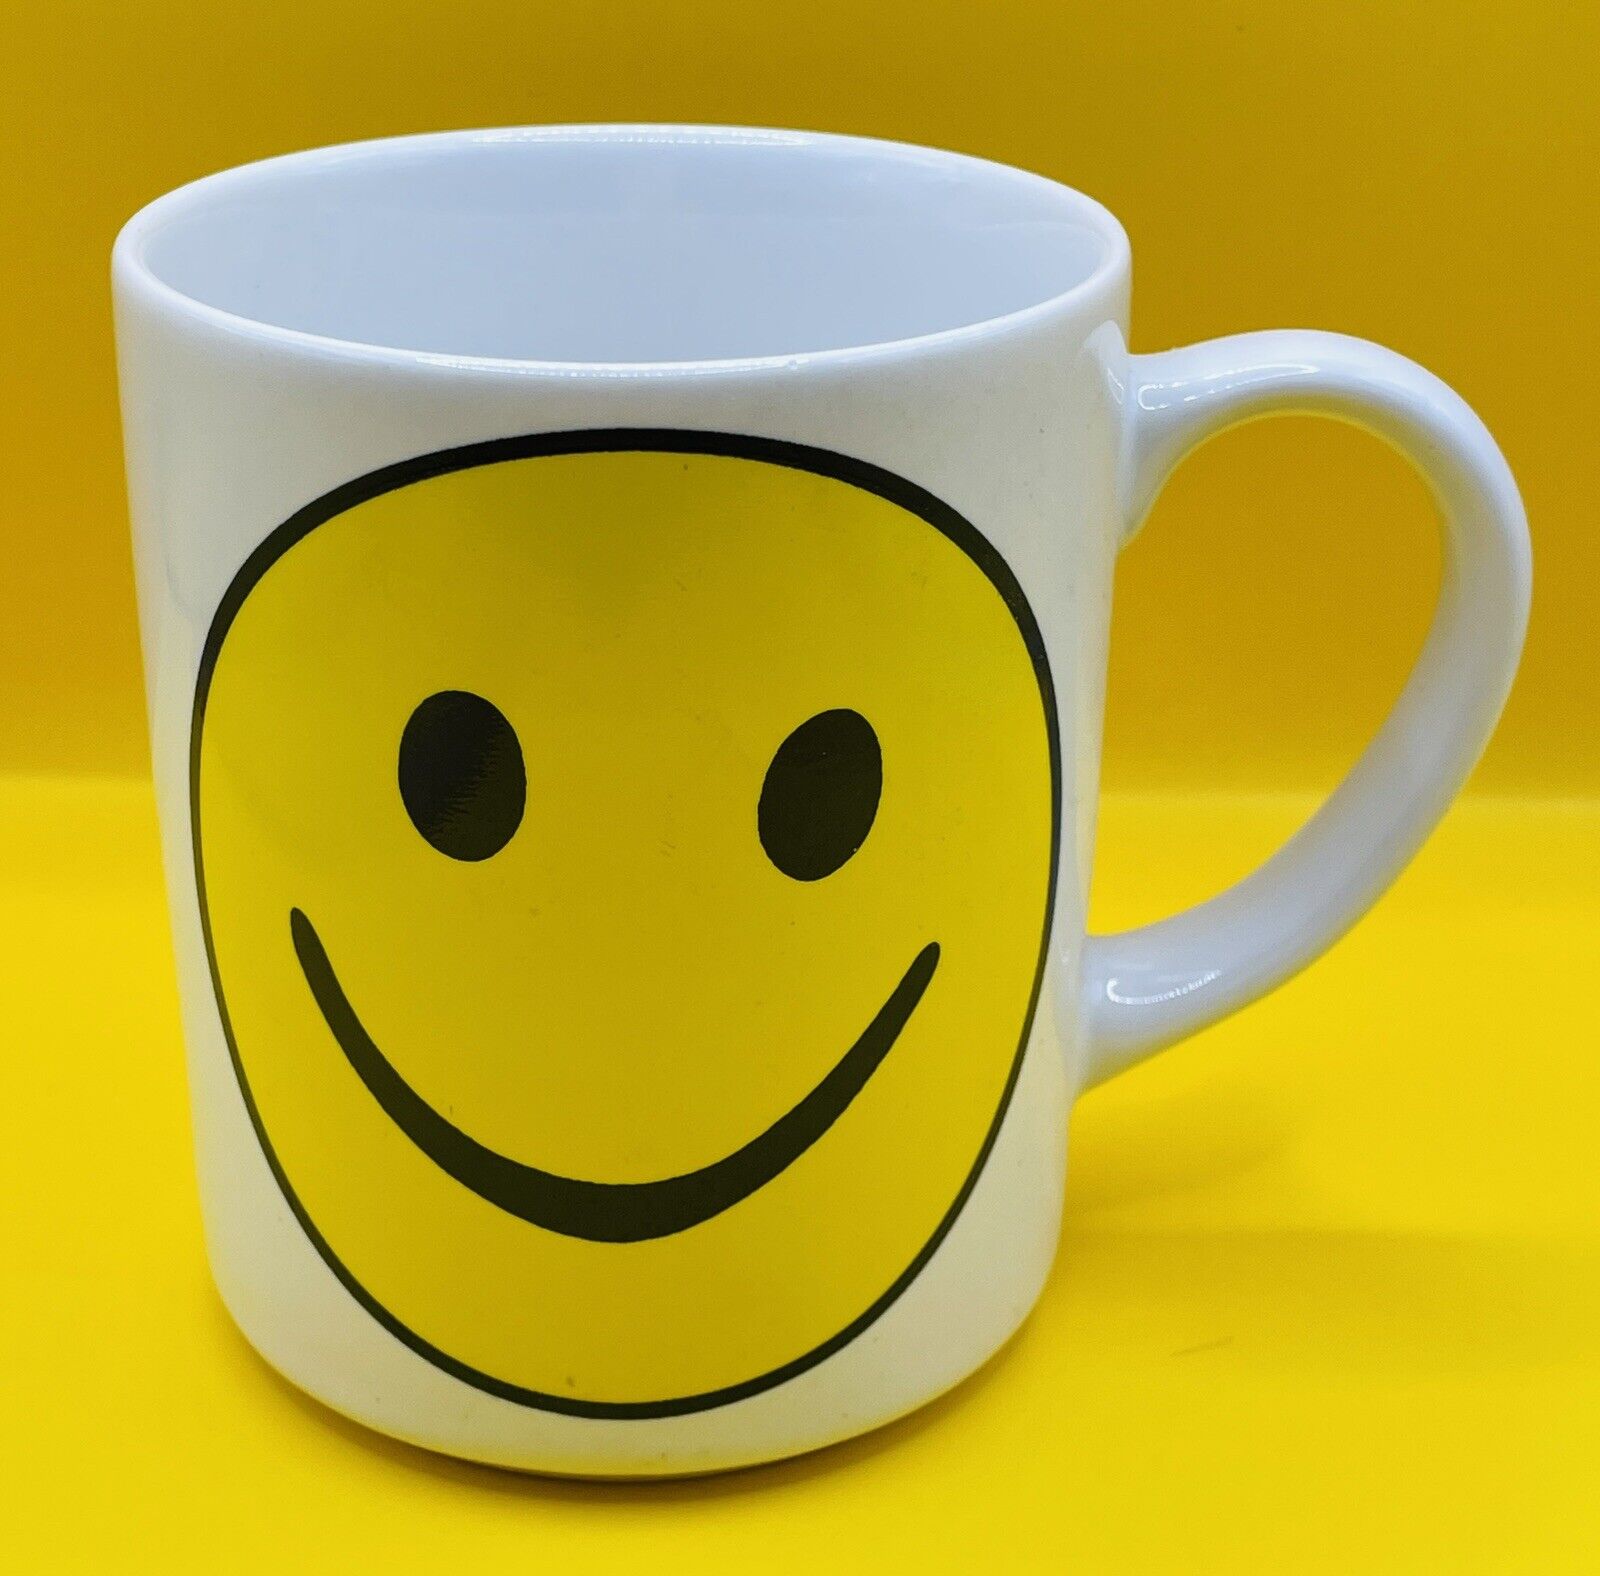 Smile Smiley Face Mug By Idea Nuova